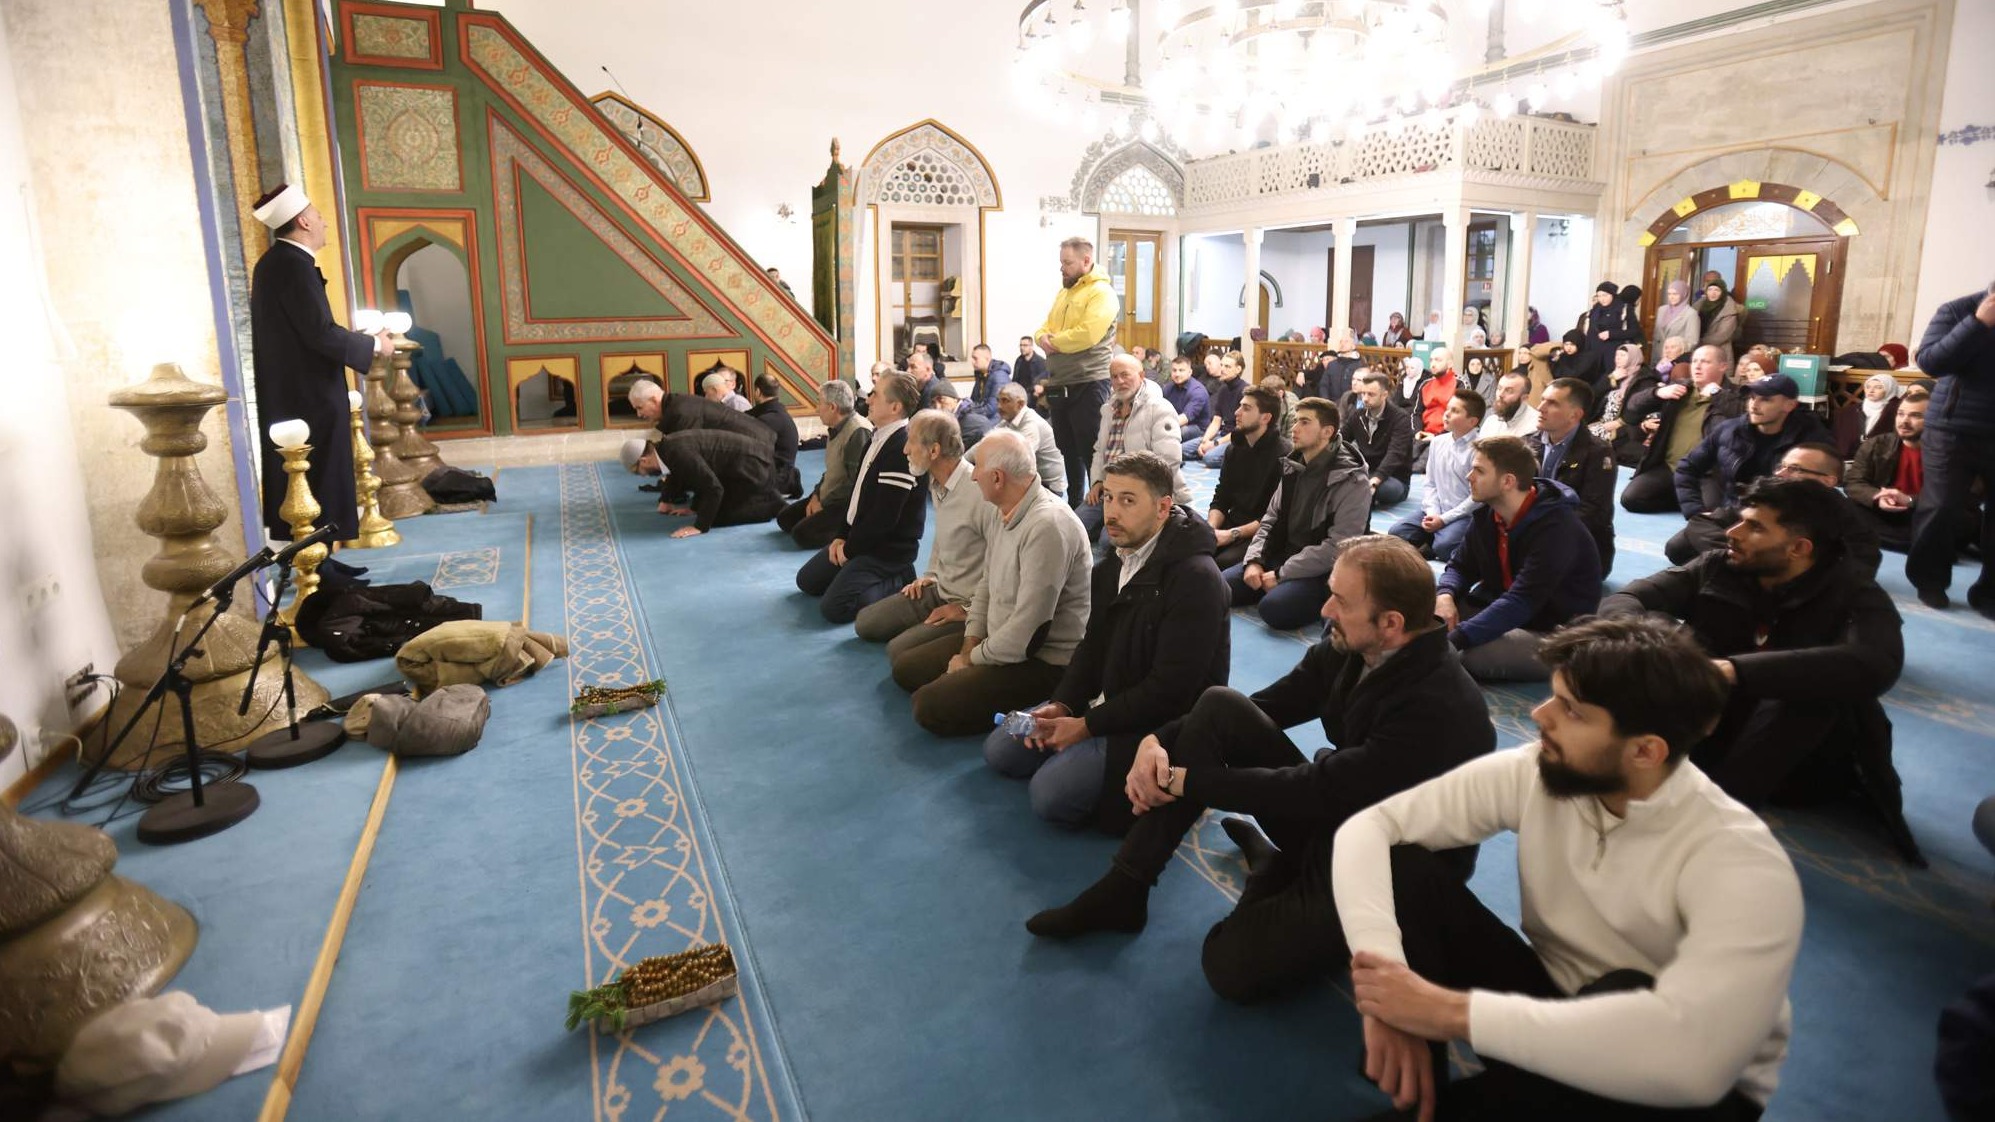 Lejletul-bedr: Centralni program MIZ Sarajevo proučen u Carevoj džamiji